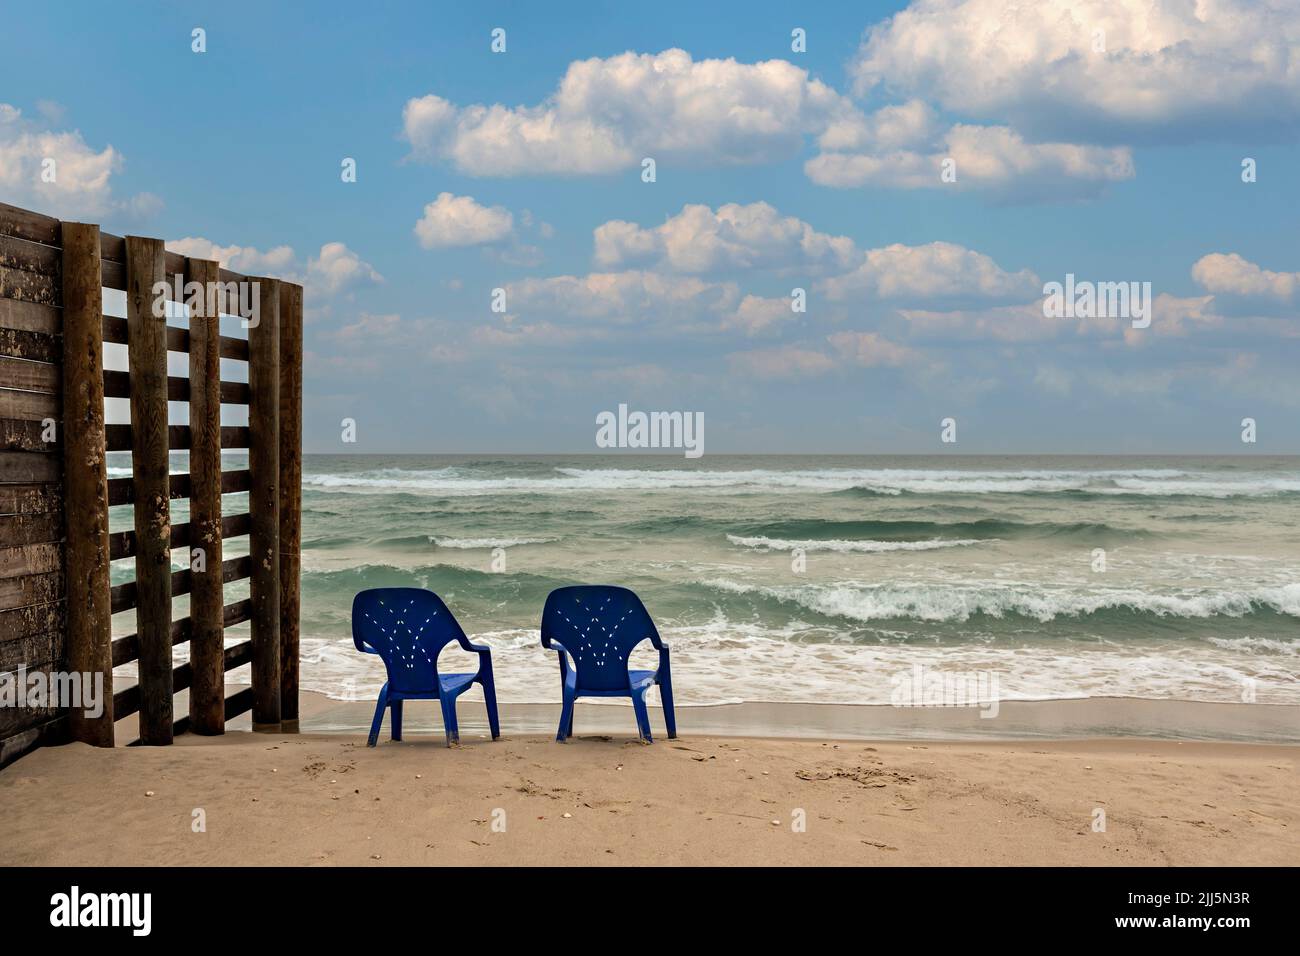 Israël, district de tel Aviv, Bat Yam, deux chaises en plastique laissées sur une plage vide Banque D'Images